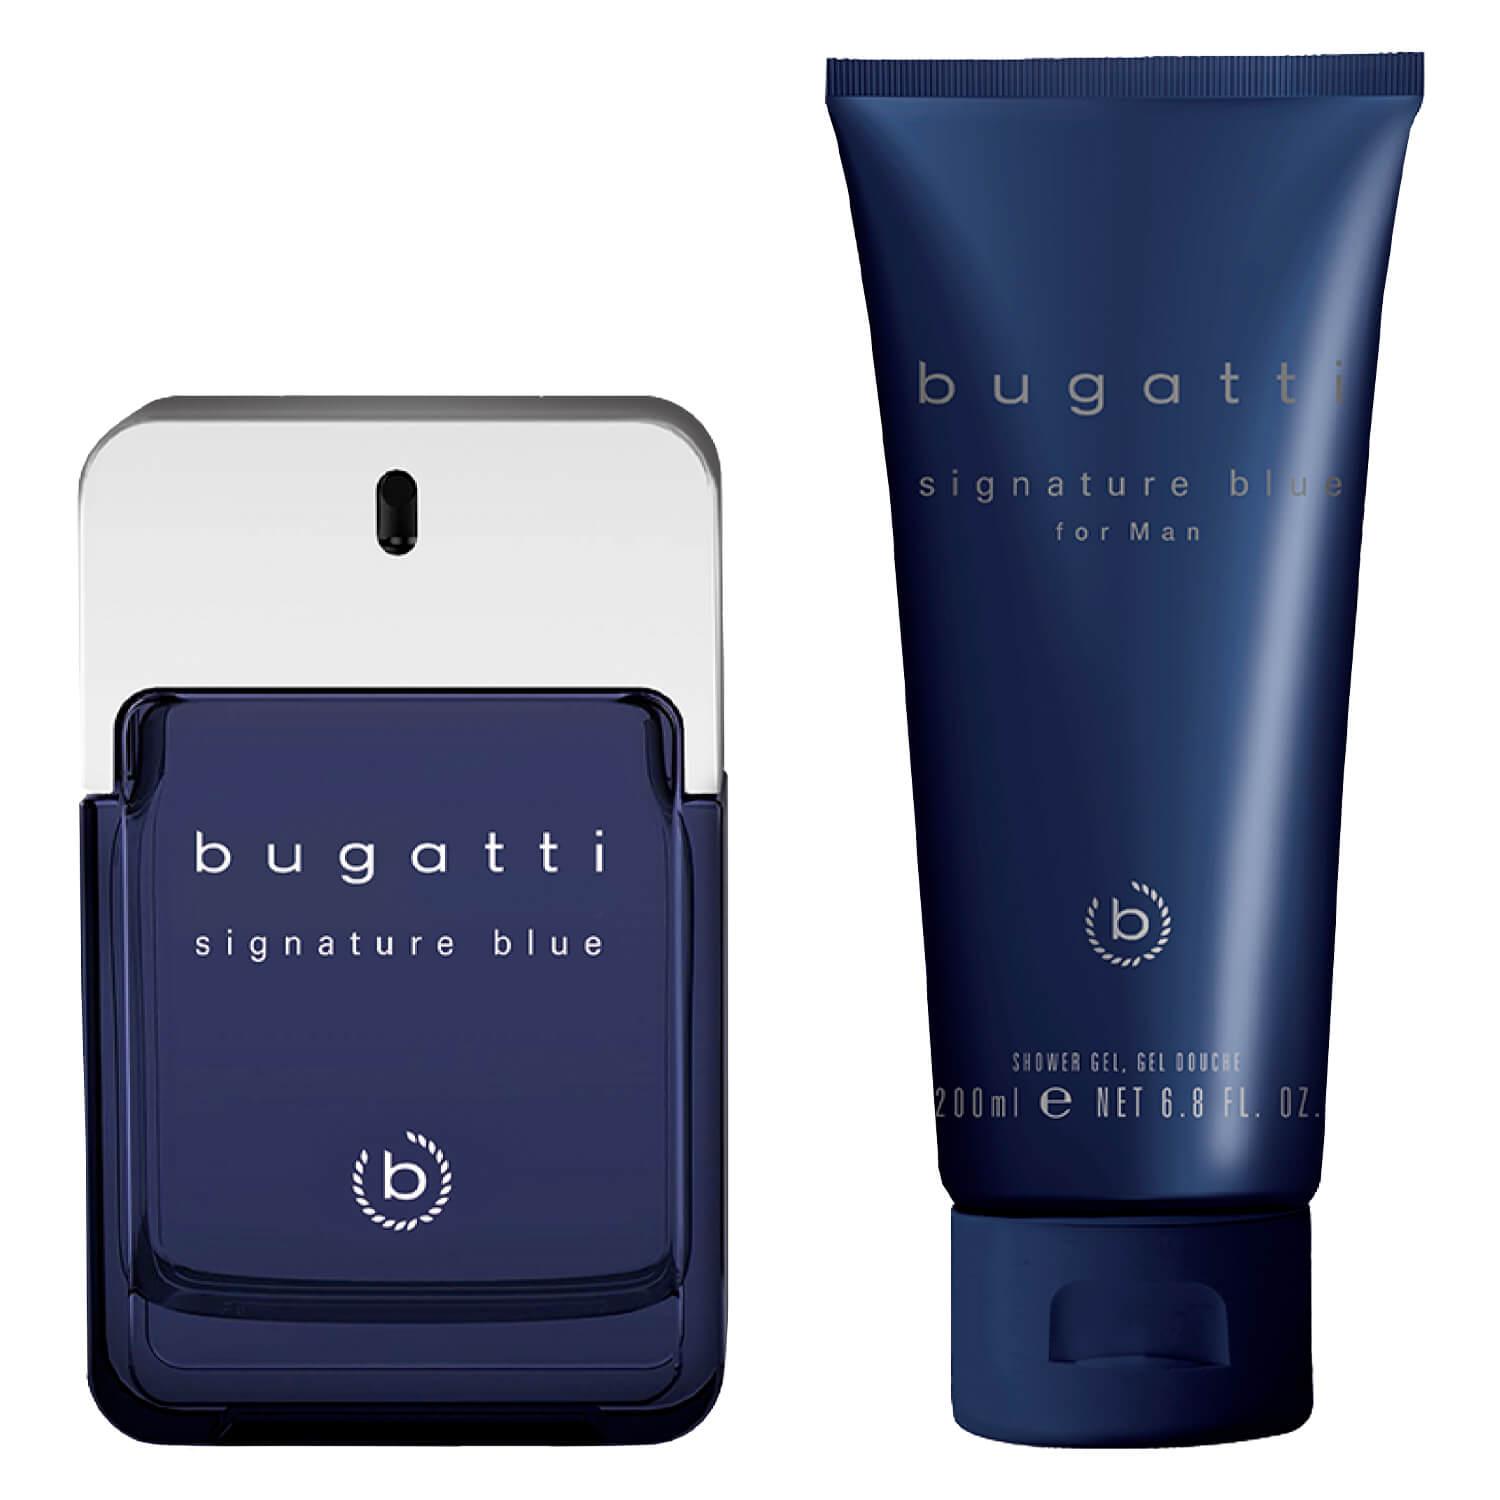 bugatti - Signature Blue Eau de Toilette Set